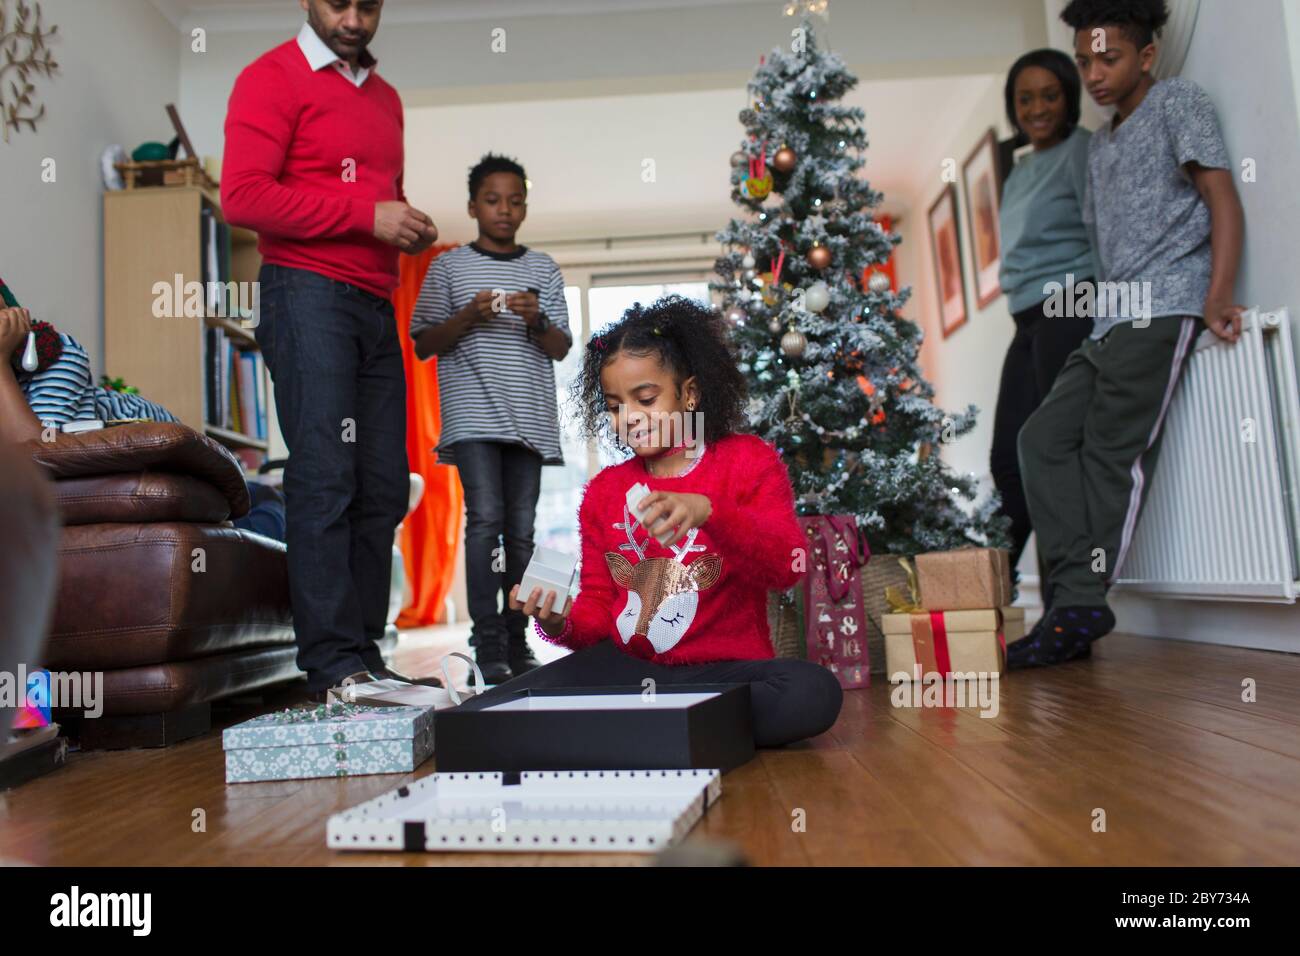 Familie beobachten Mädchen öffnen Weihnachtsgeschenke auf Wohnzimmer Boden Stockfoto